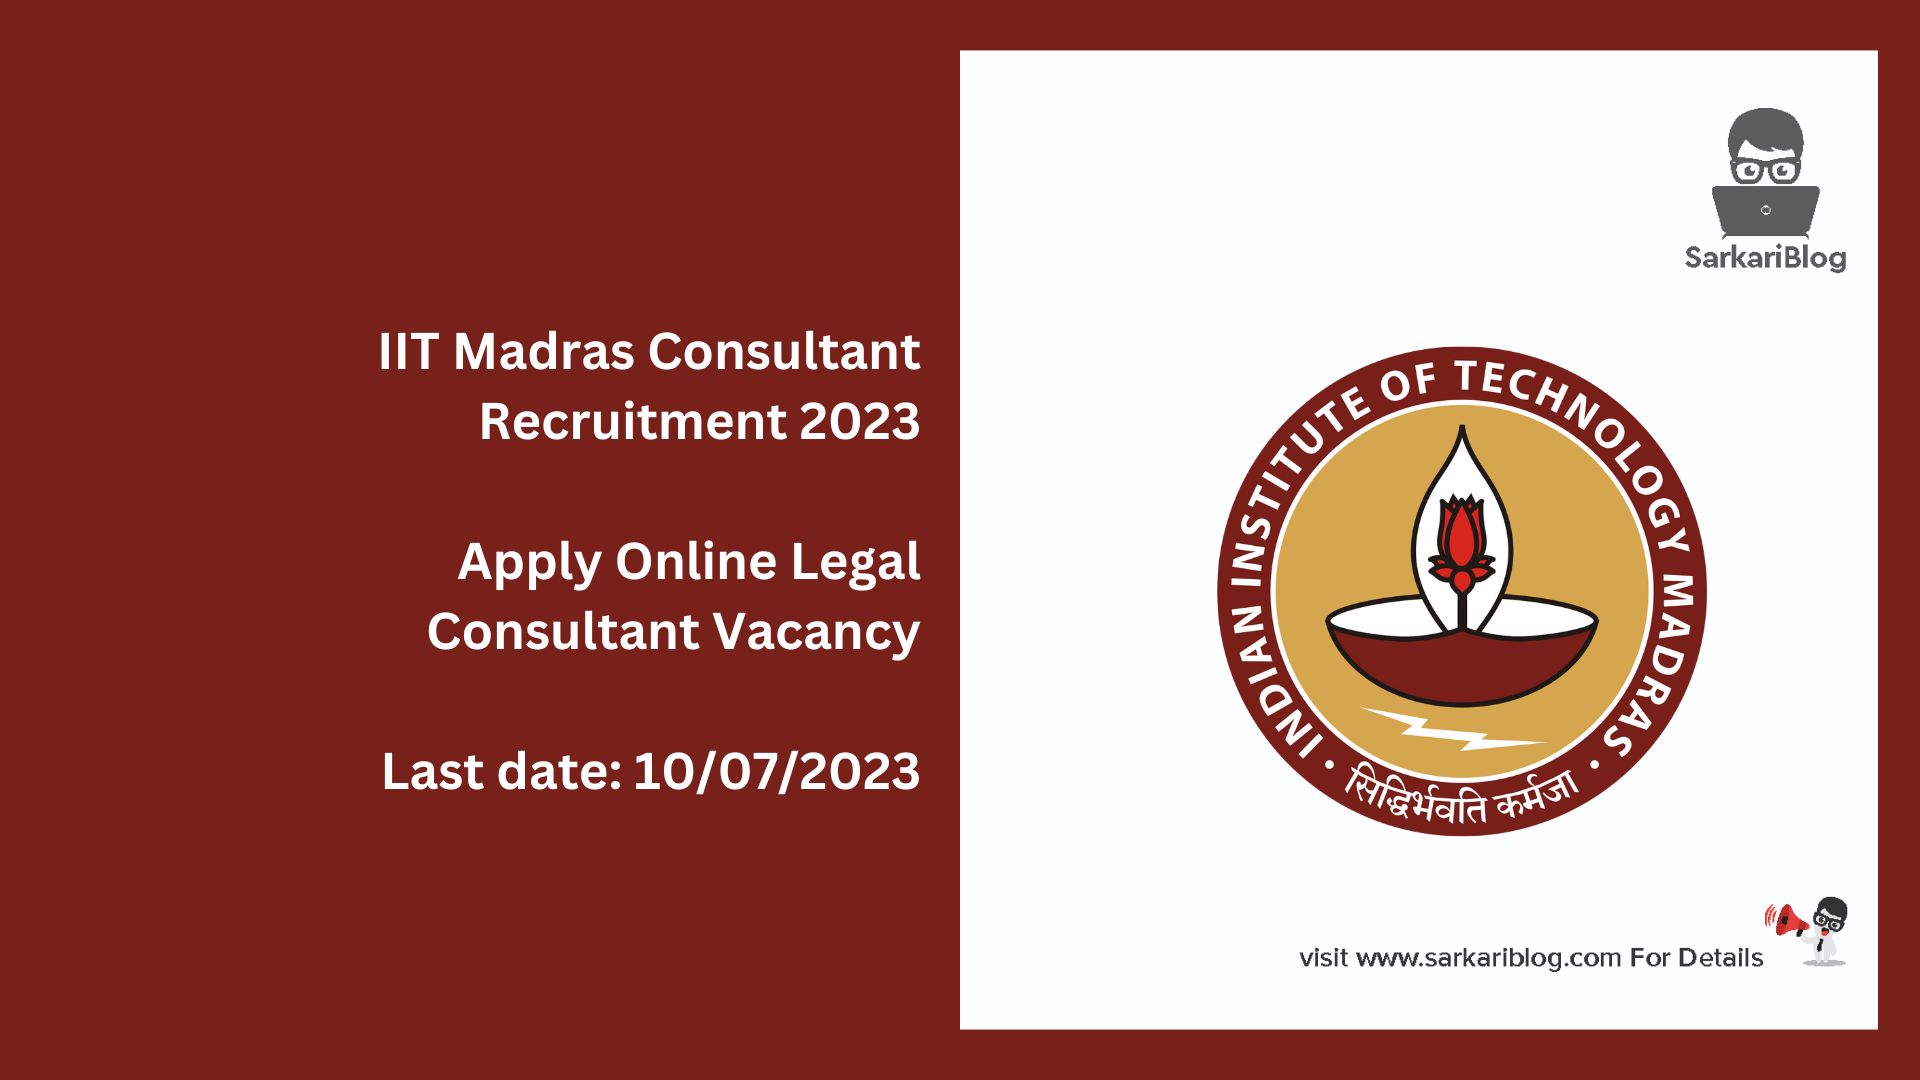 IIT Madras Consultant Recruitment 2023